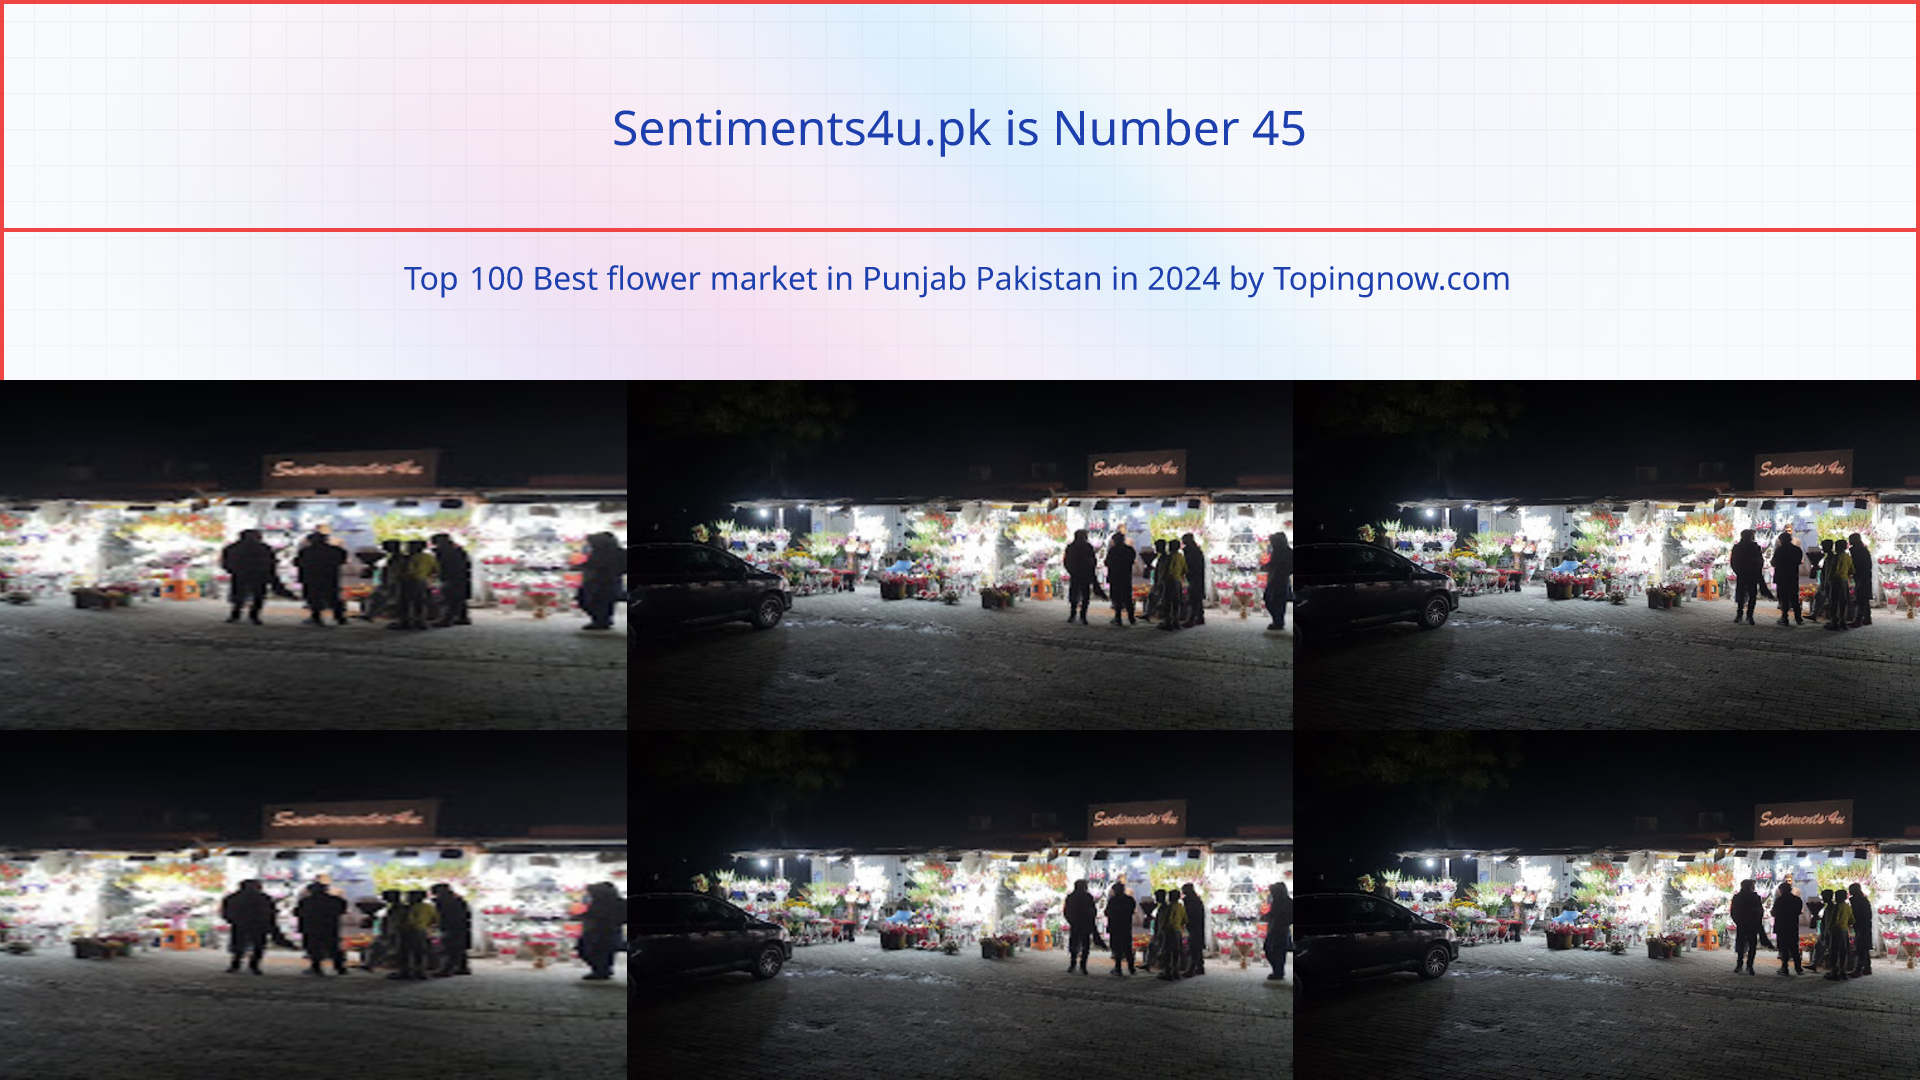 Sentiments4u.pk: Top 100 Best flower market in Punjab Pakistan in 2024